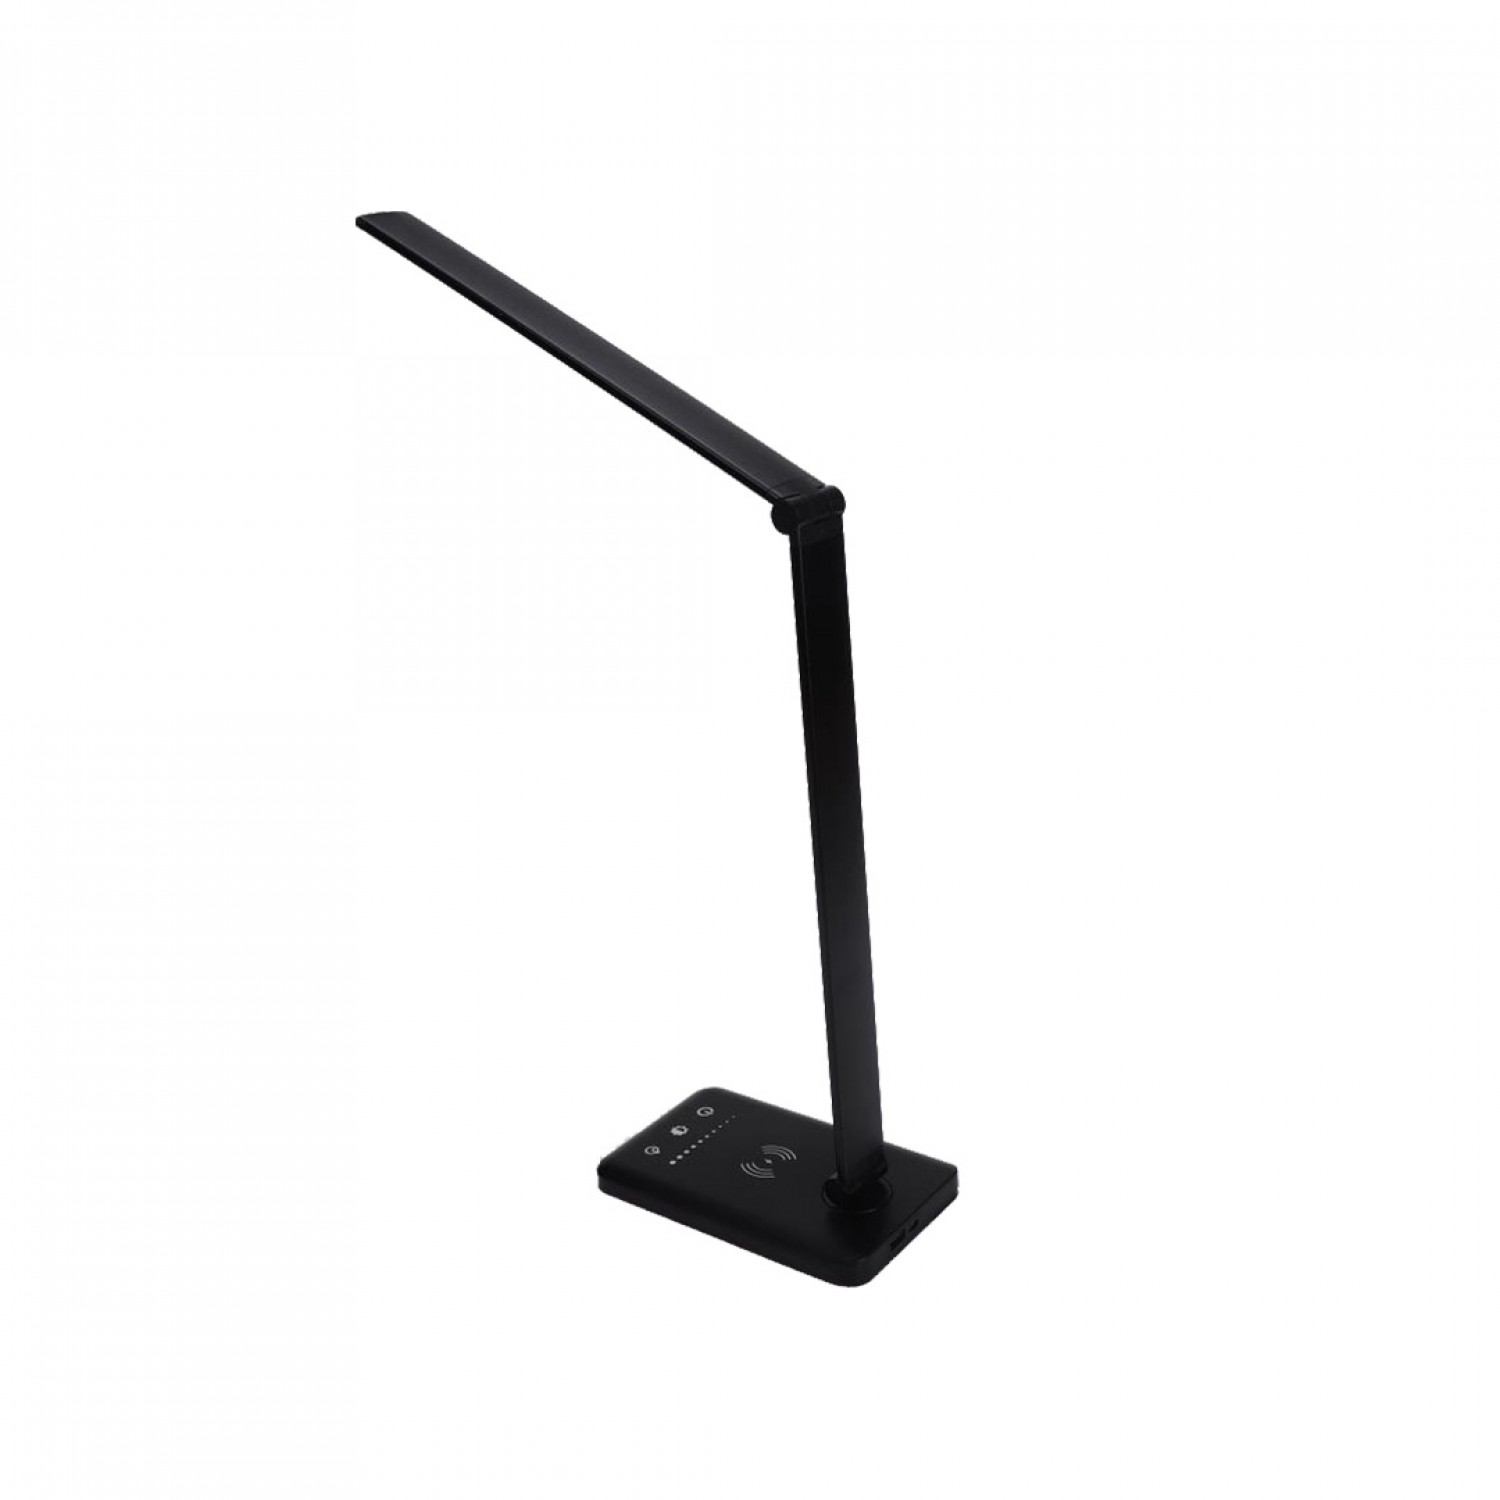 Επιτραπέζιο φωτιστικό LED 7W 3CCT (by touch) σε μαύρο χρώμα D:39cm (3045-BL)